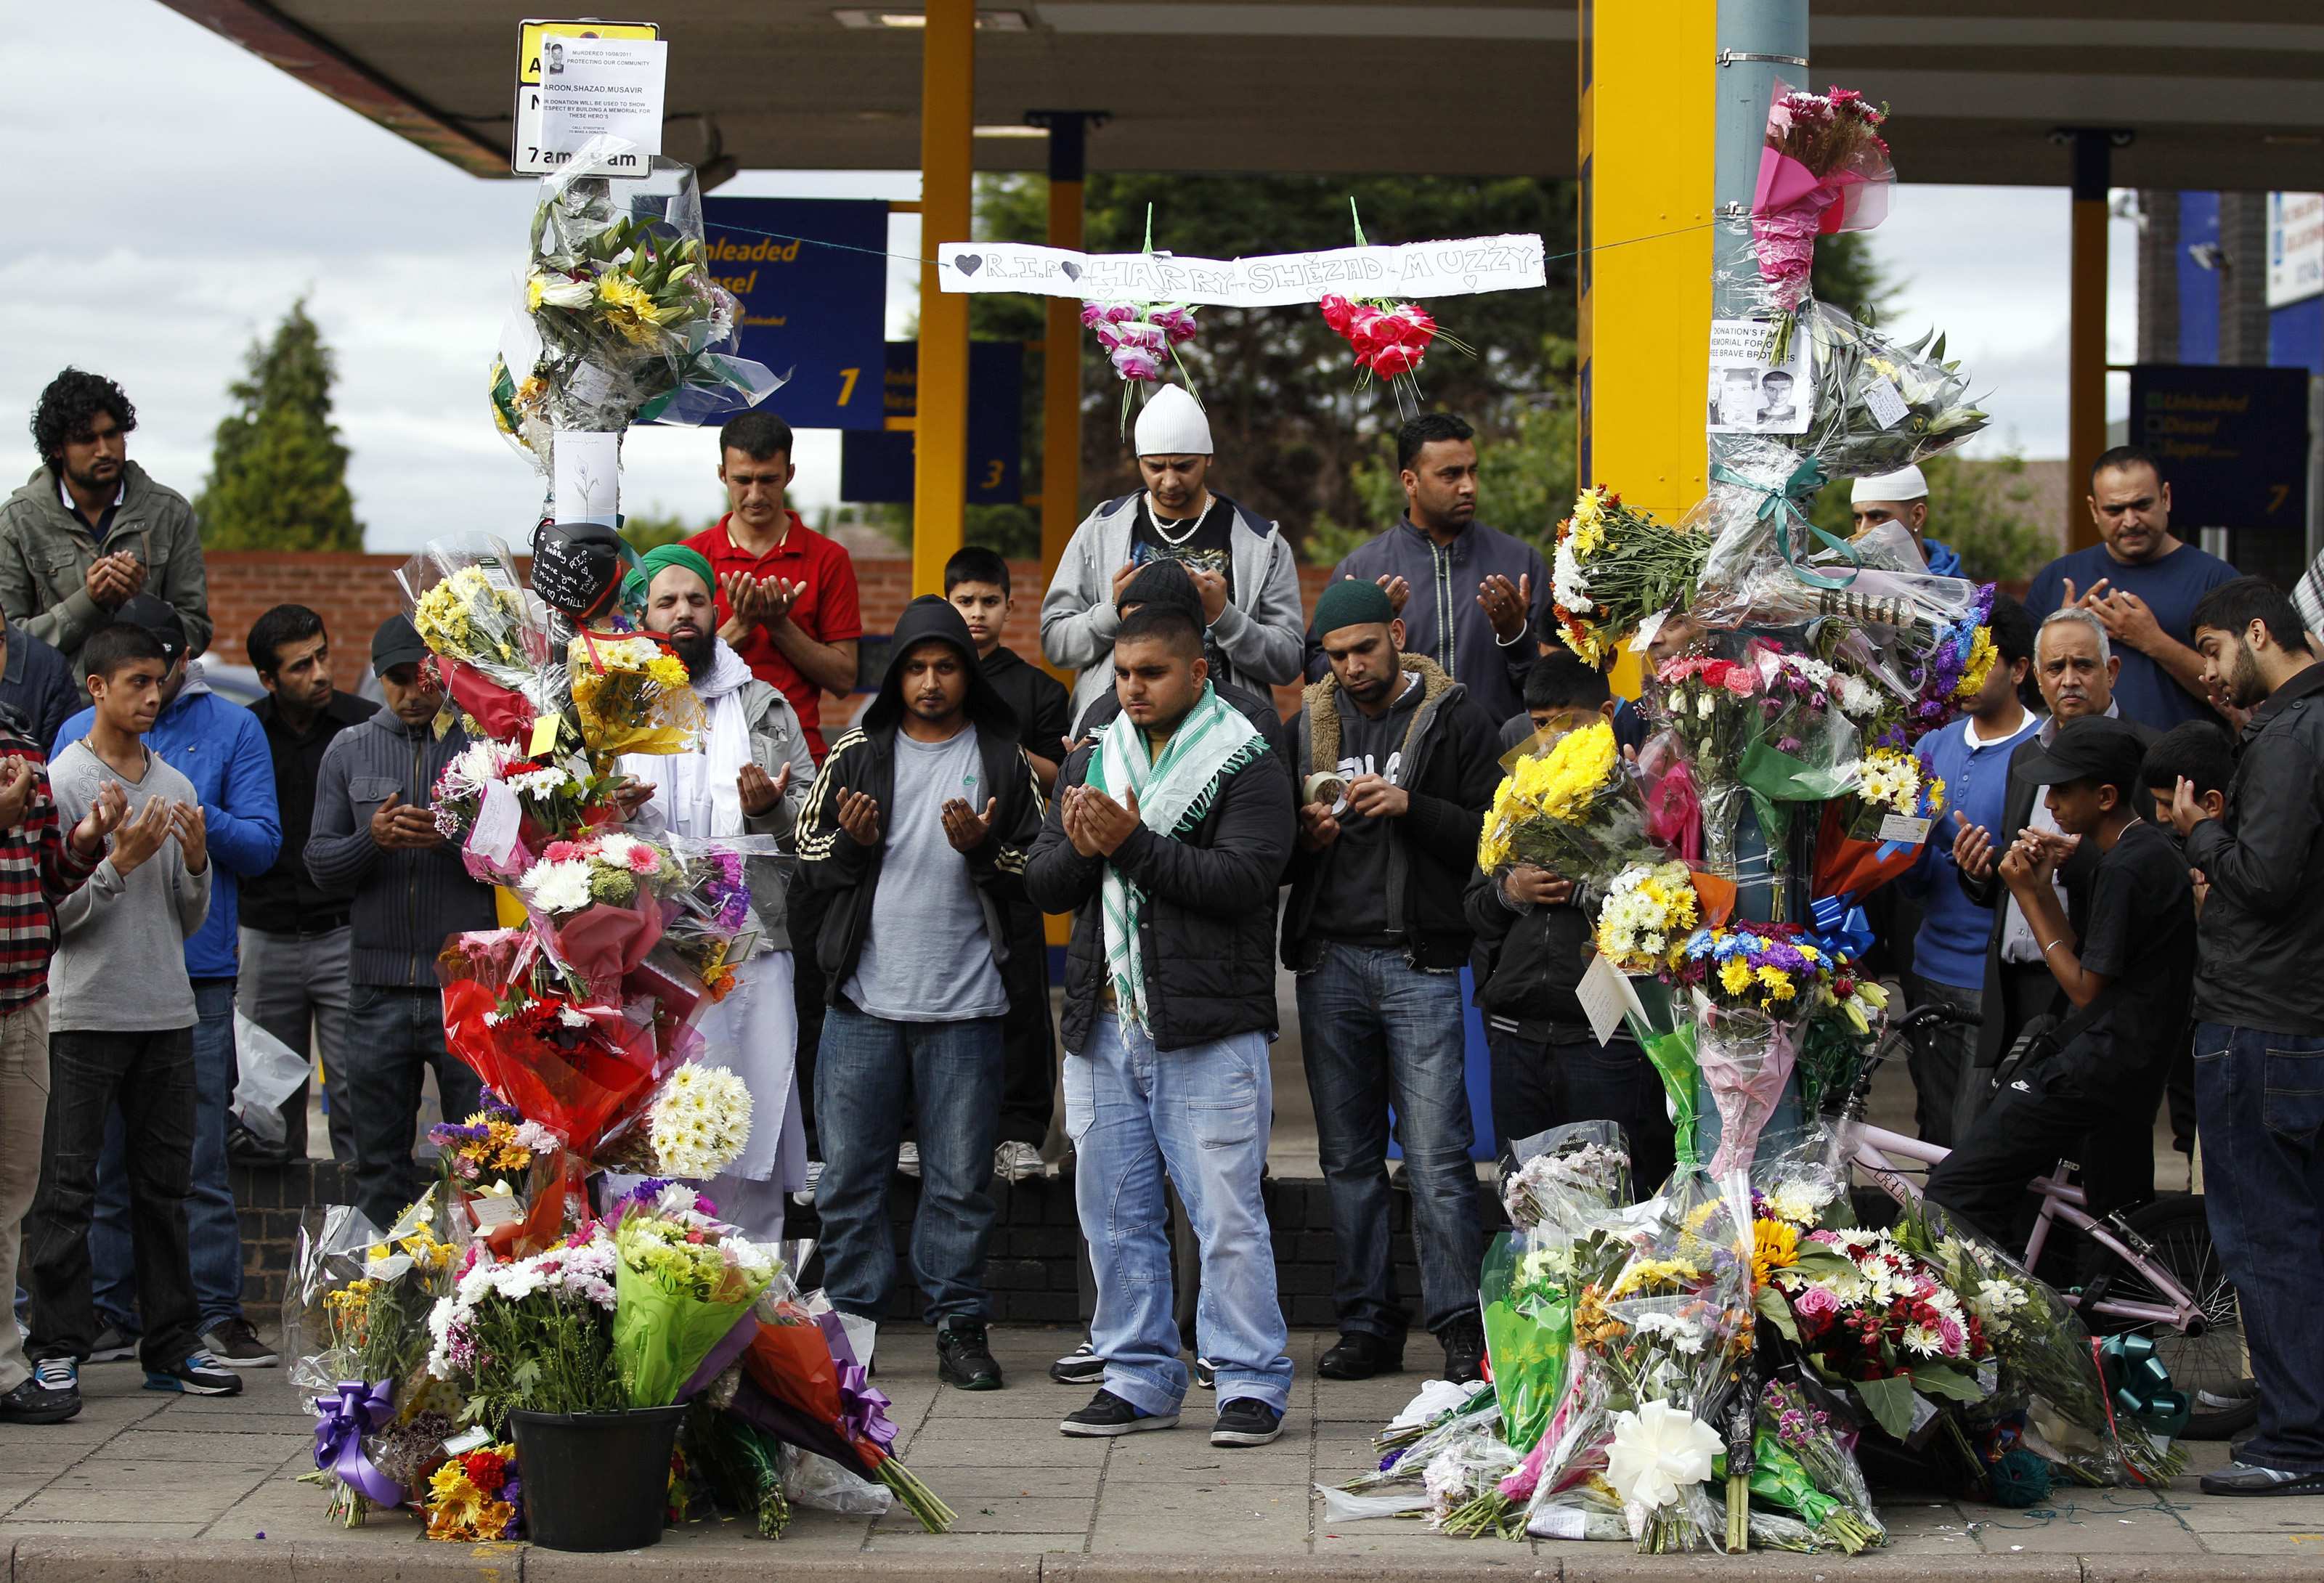 Δέκα χρόνια μετά, το Λονδίνο θυμάται και τιμά τα θύματα της πολύνεκρης επίθεσης